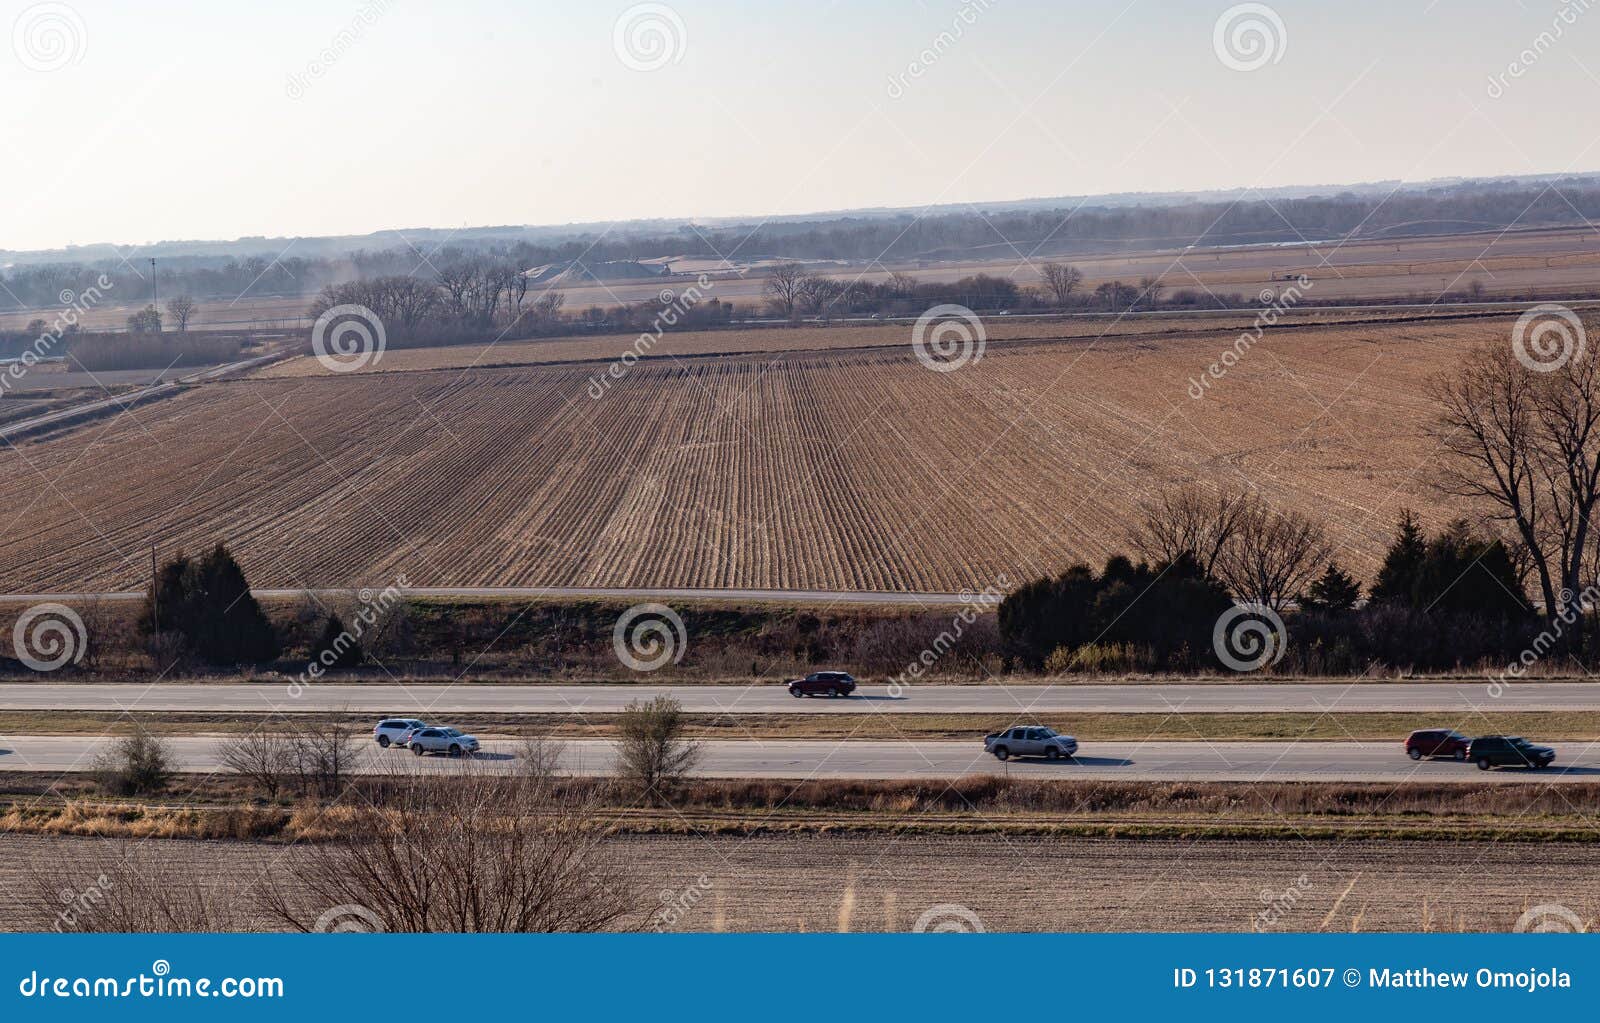 La vista aérea de filas del maíz maduro en una granja en Gretna Nebraska listo para la carretera I-80 de la cosecha se considera en el primero plano